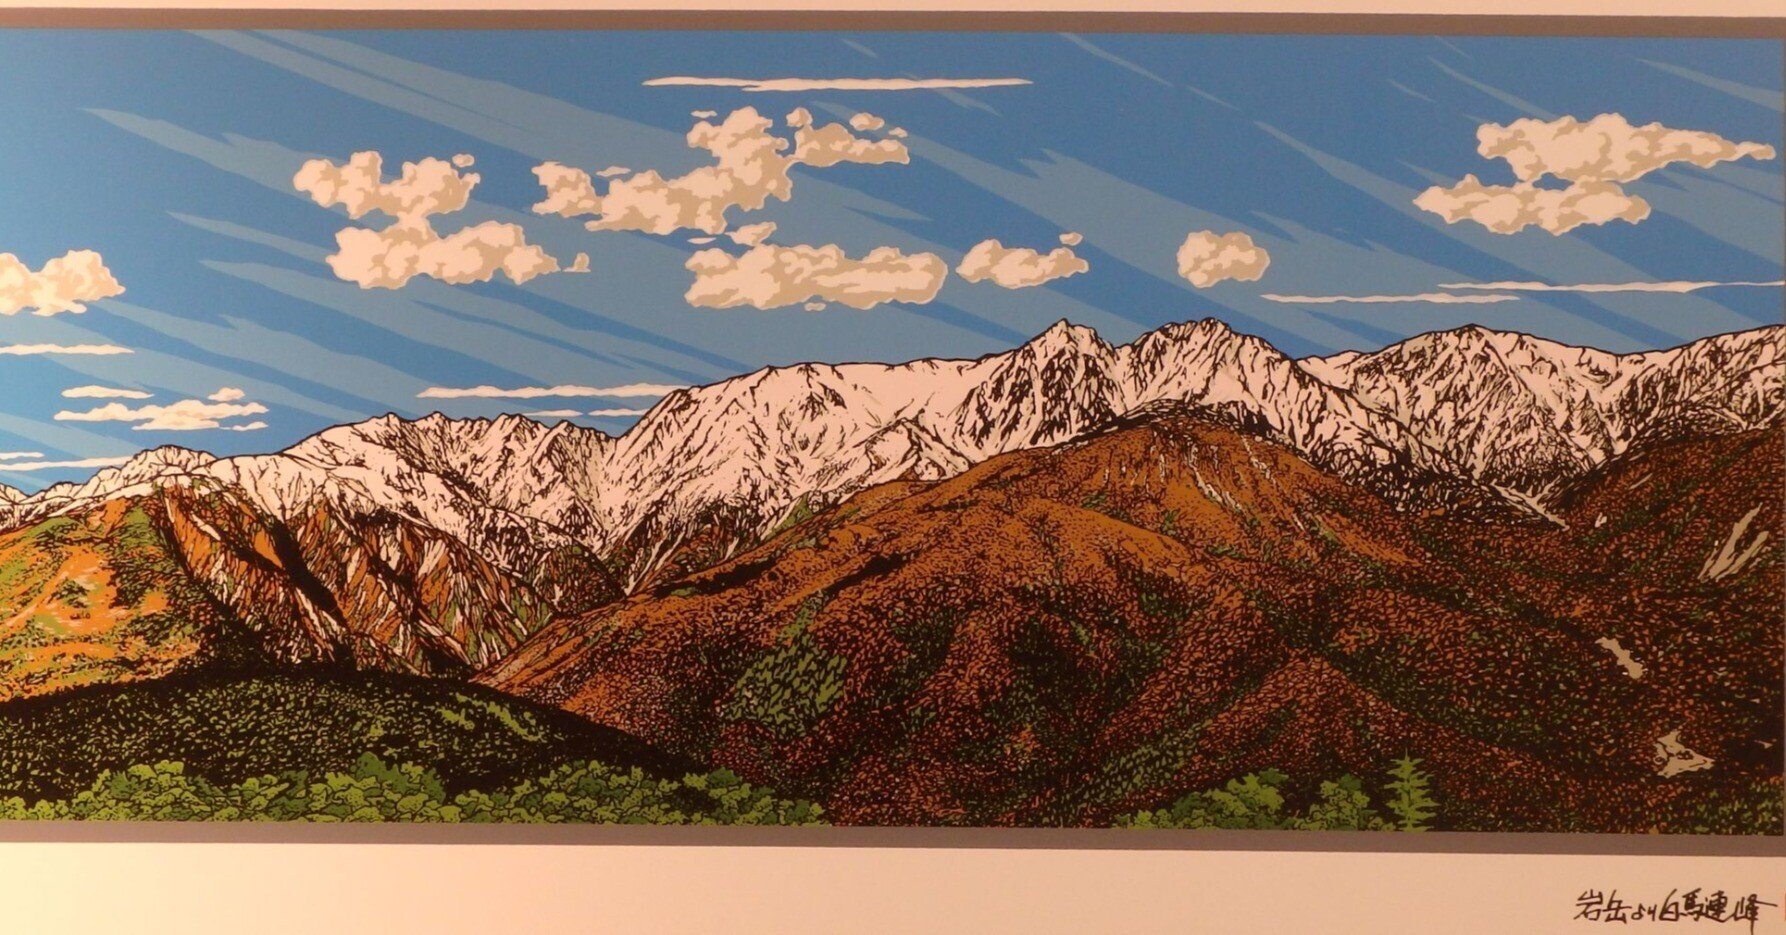 信州・安曇野で山岳風景を描く～あさのたかを「タイルアートの世界